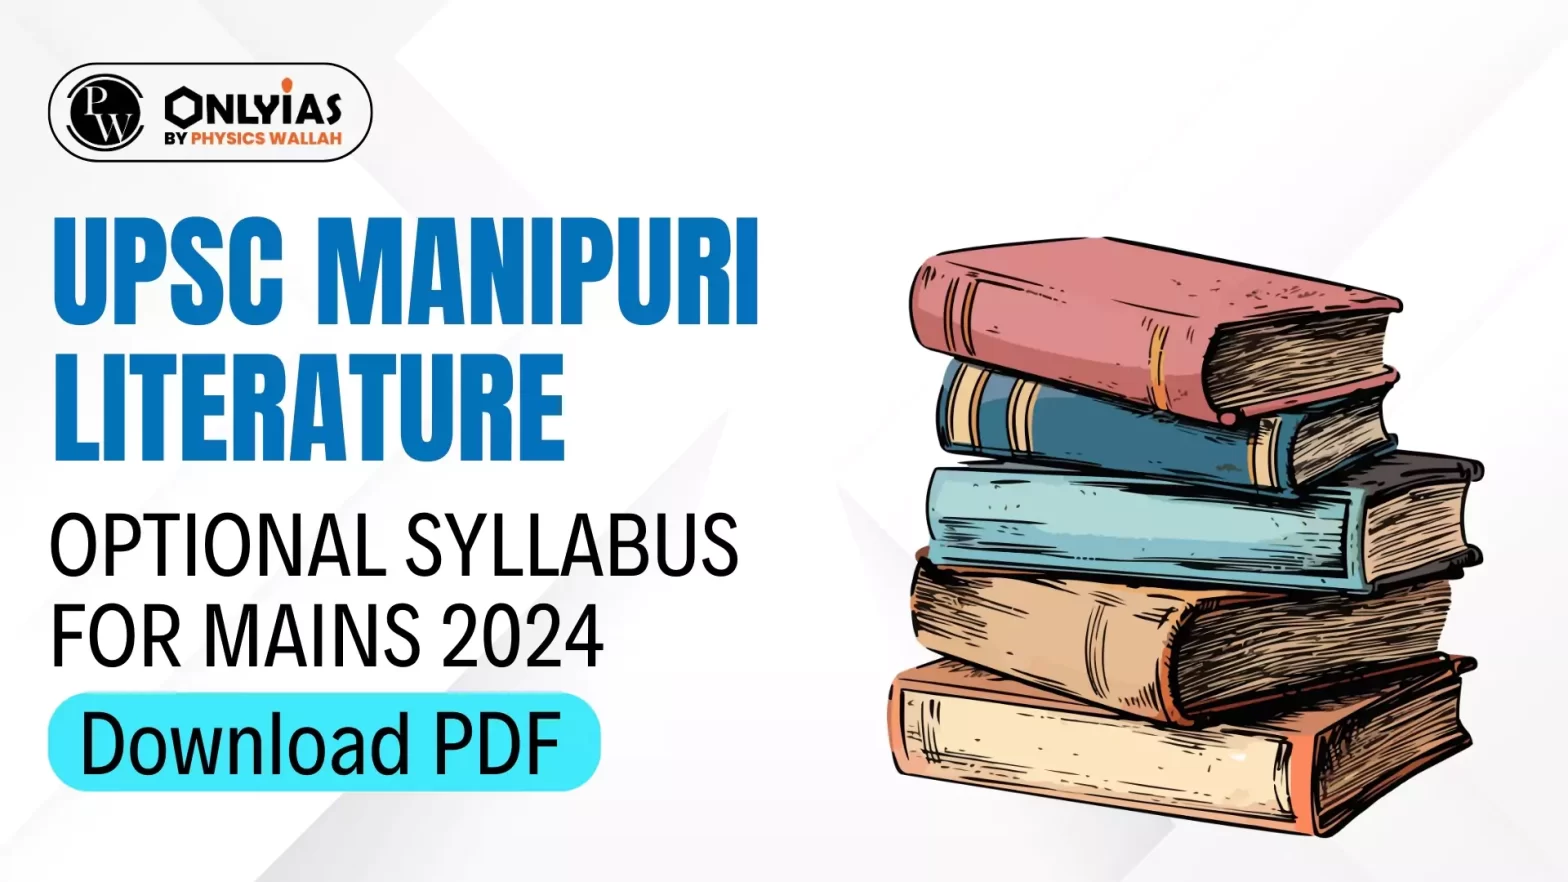 UPSC Manipuri Literature Optional Syllabus for Mains 2024, Download PDF